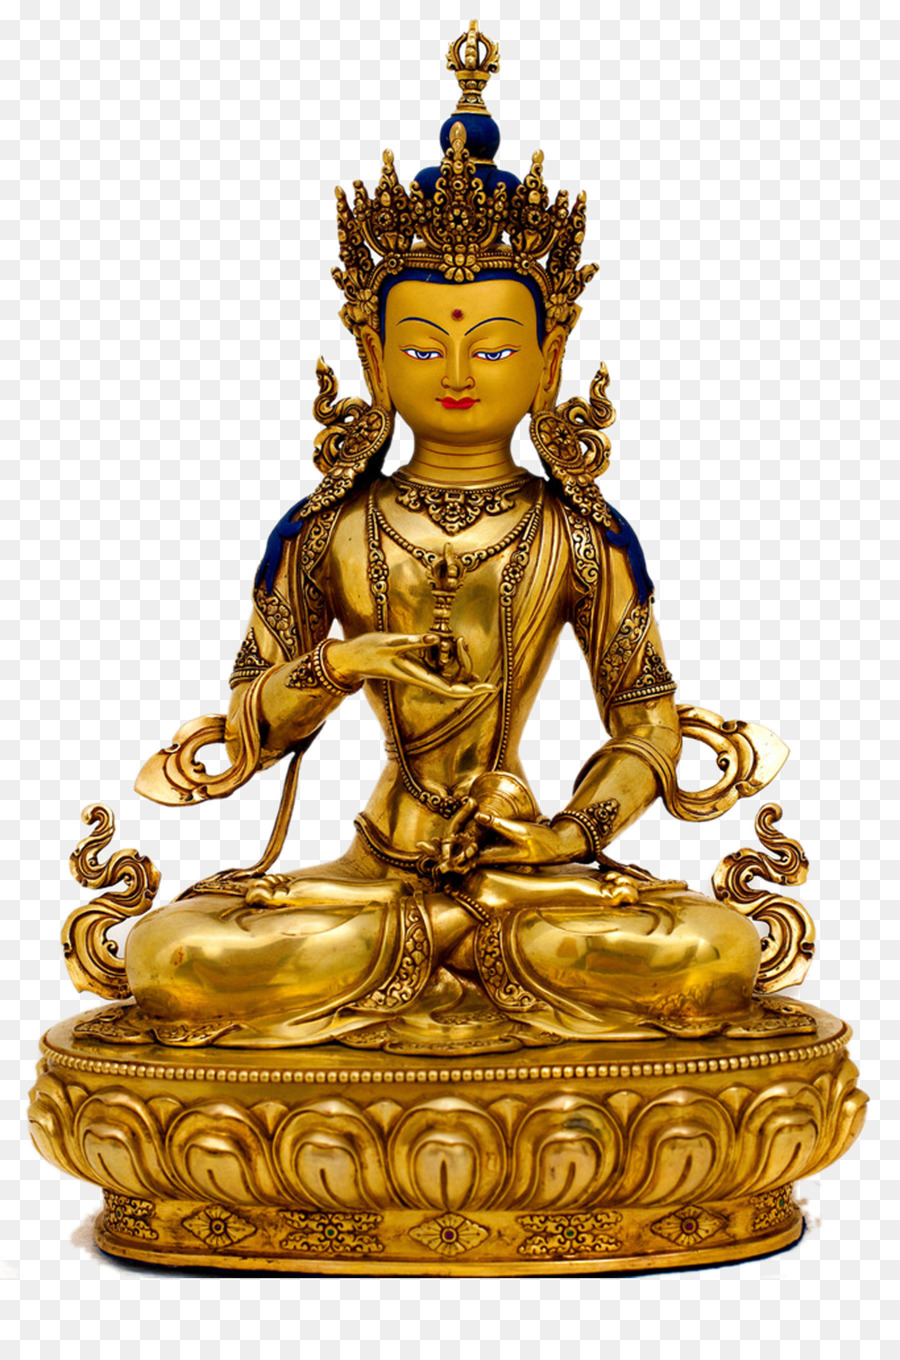 Cuốn Sách tây Tạng của Sống và Chết Phật Giáo Buddharupa - Tượng phật của Phật giáo hóa